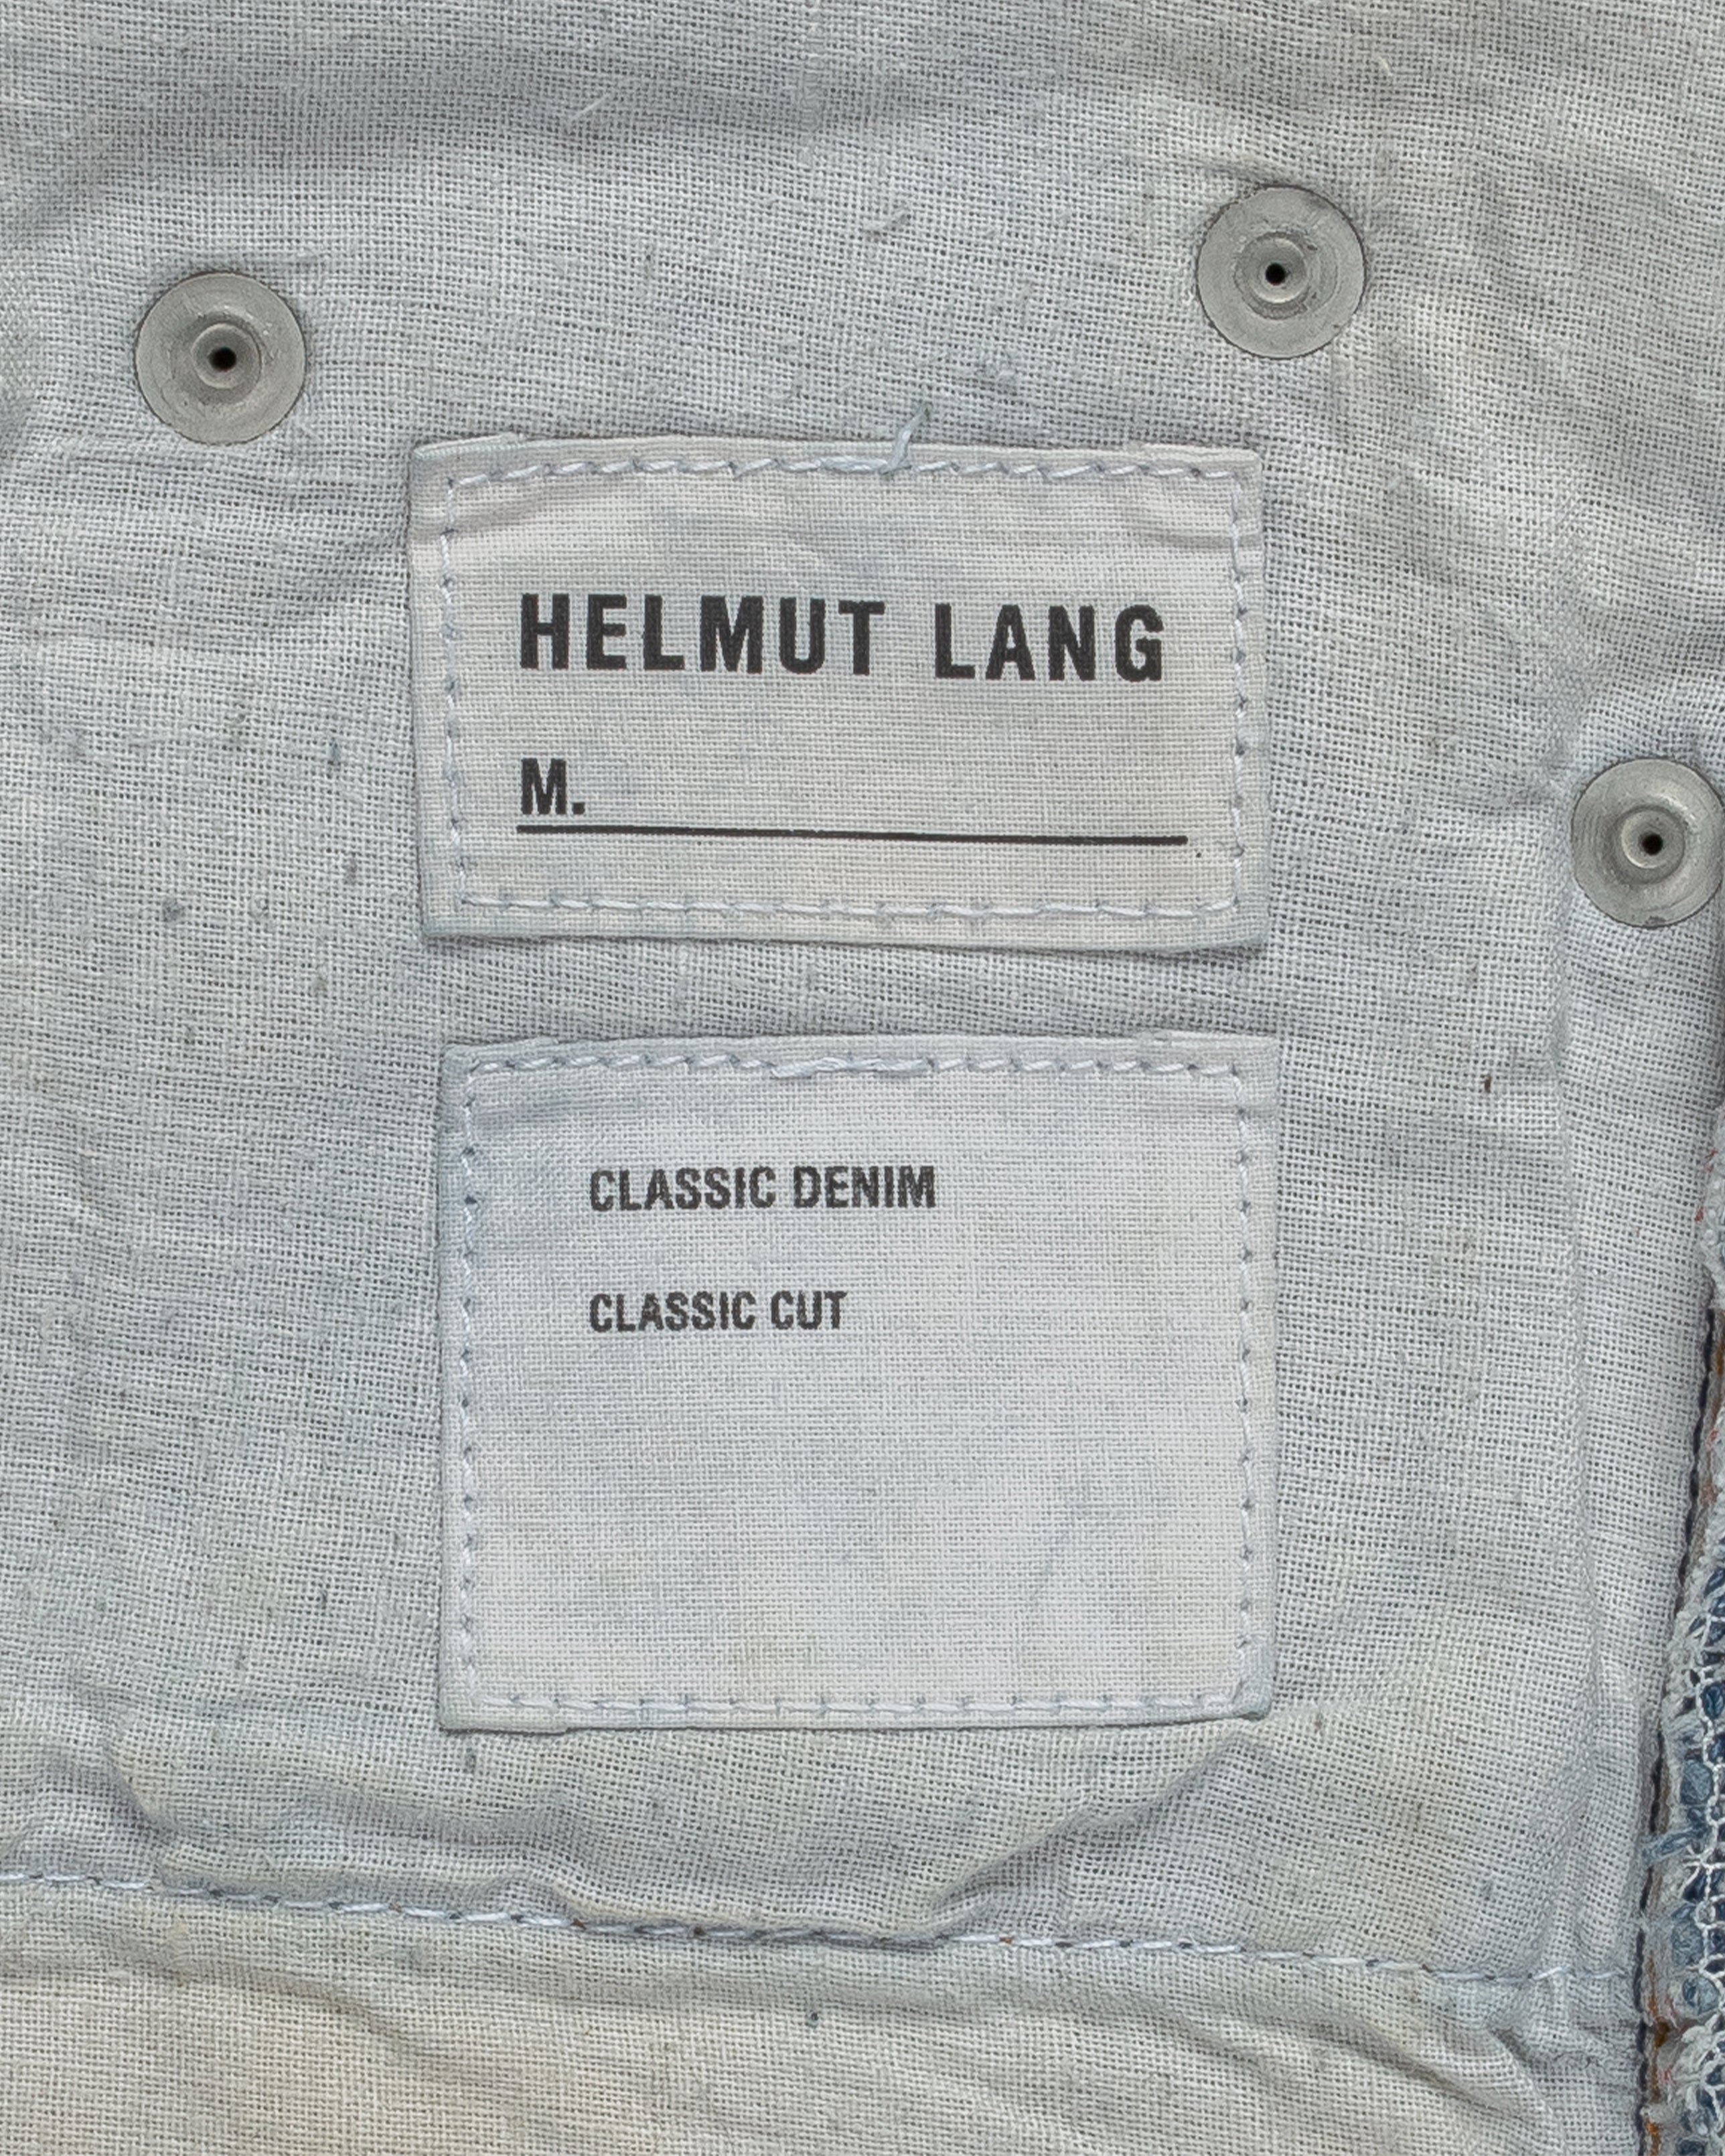 Helmut Lang Raw Denim Jeans Classic Cut - 1990s - SILVER LEAGUE